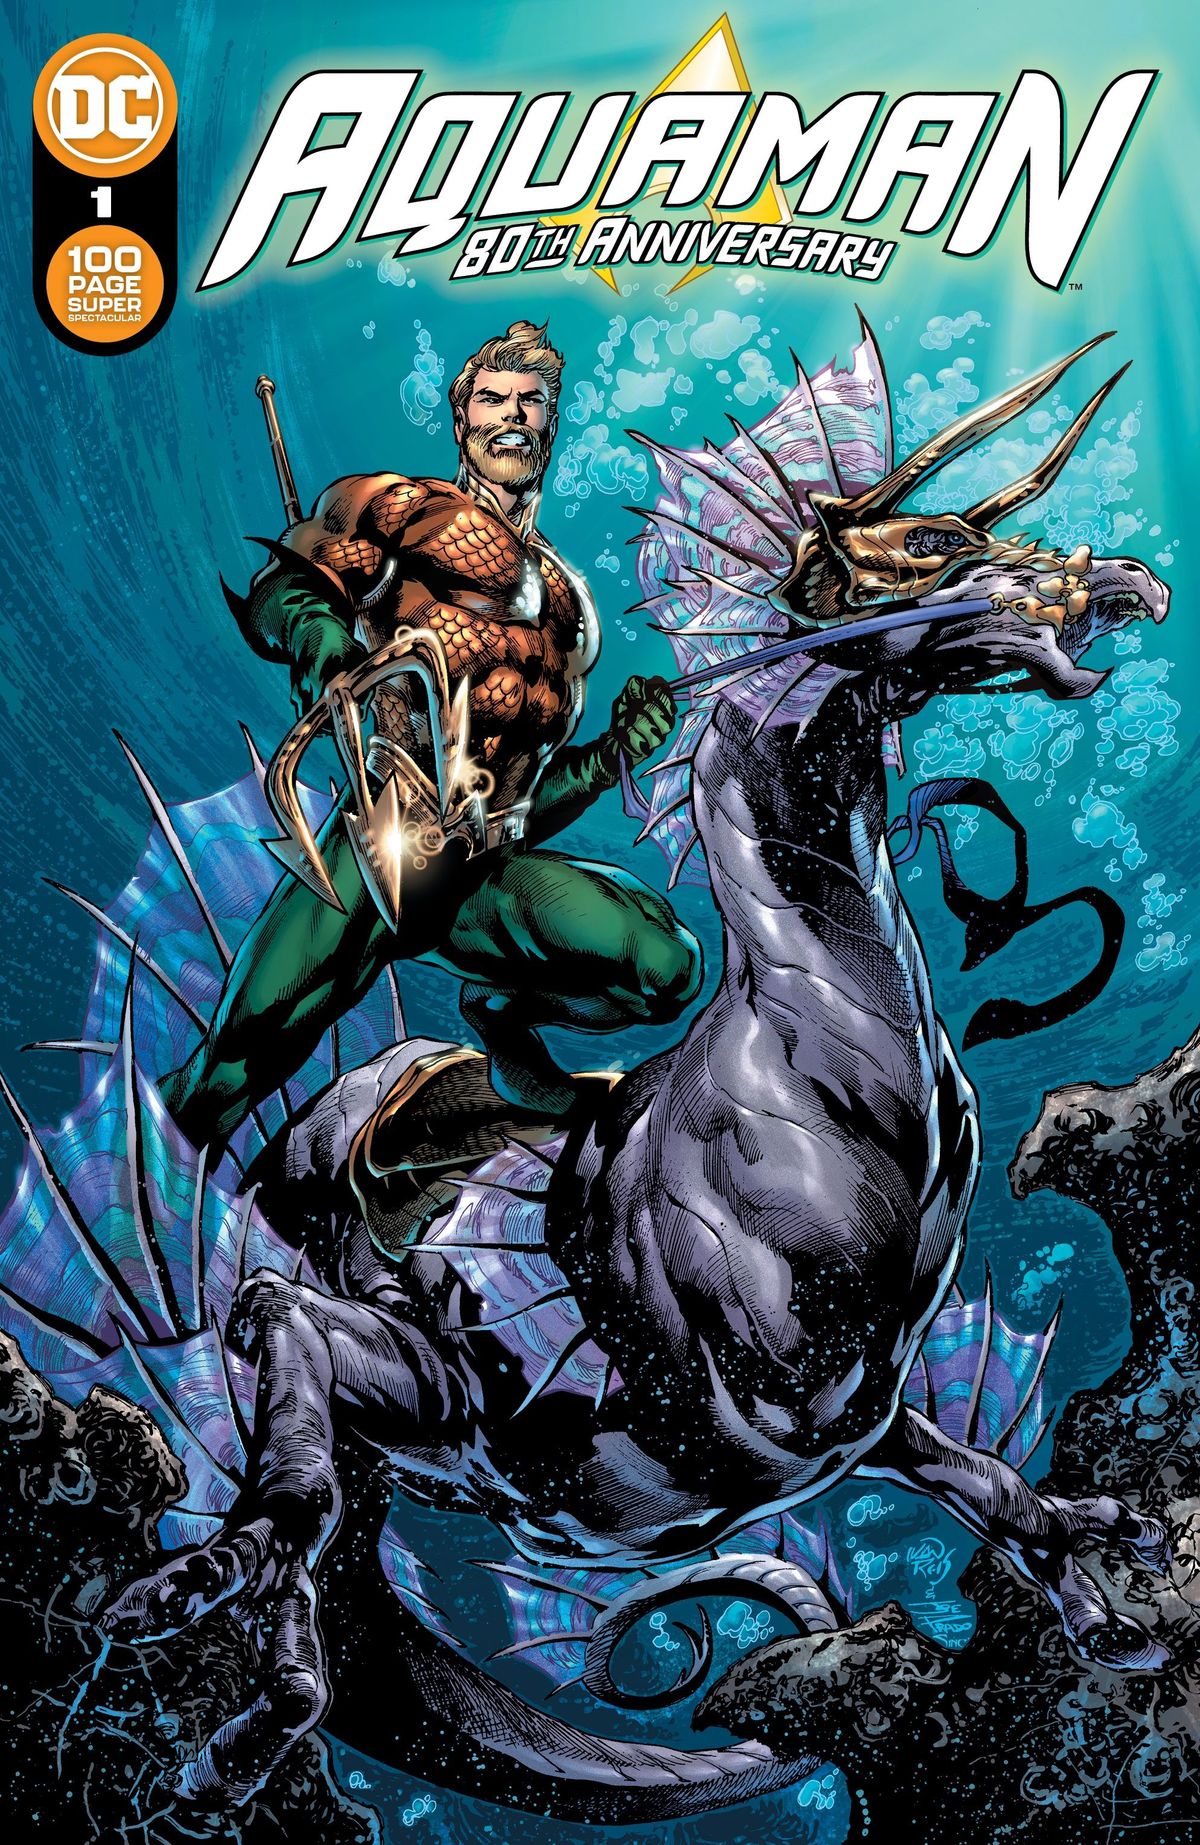 DC, 100 페이지 슈퍼 스펙 타 큘러로 Aquaman의 80 주년을 축하합니다